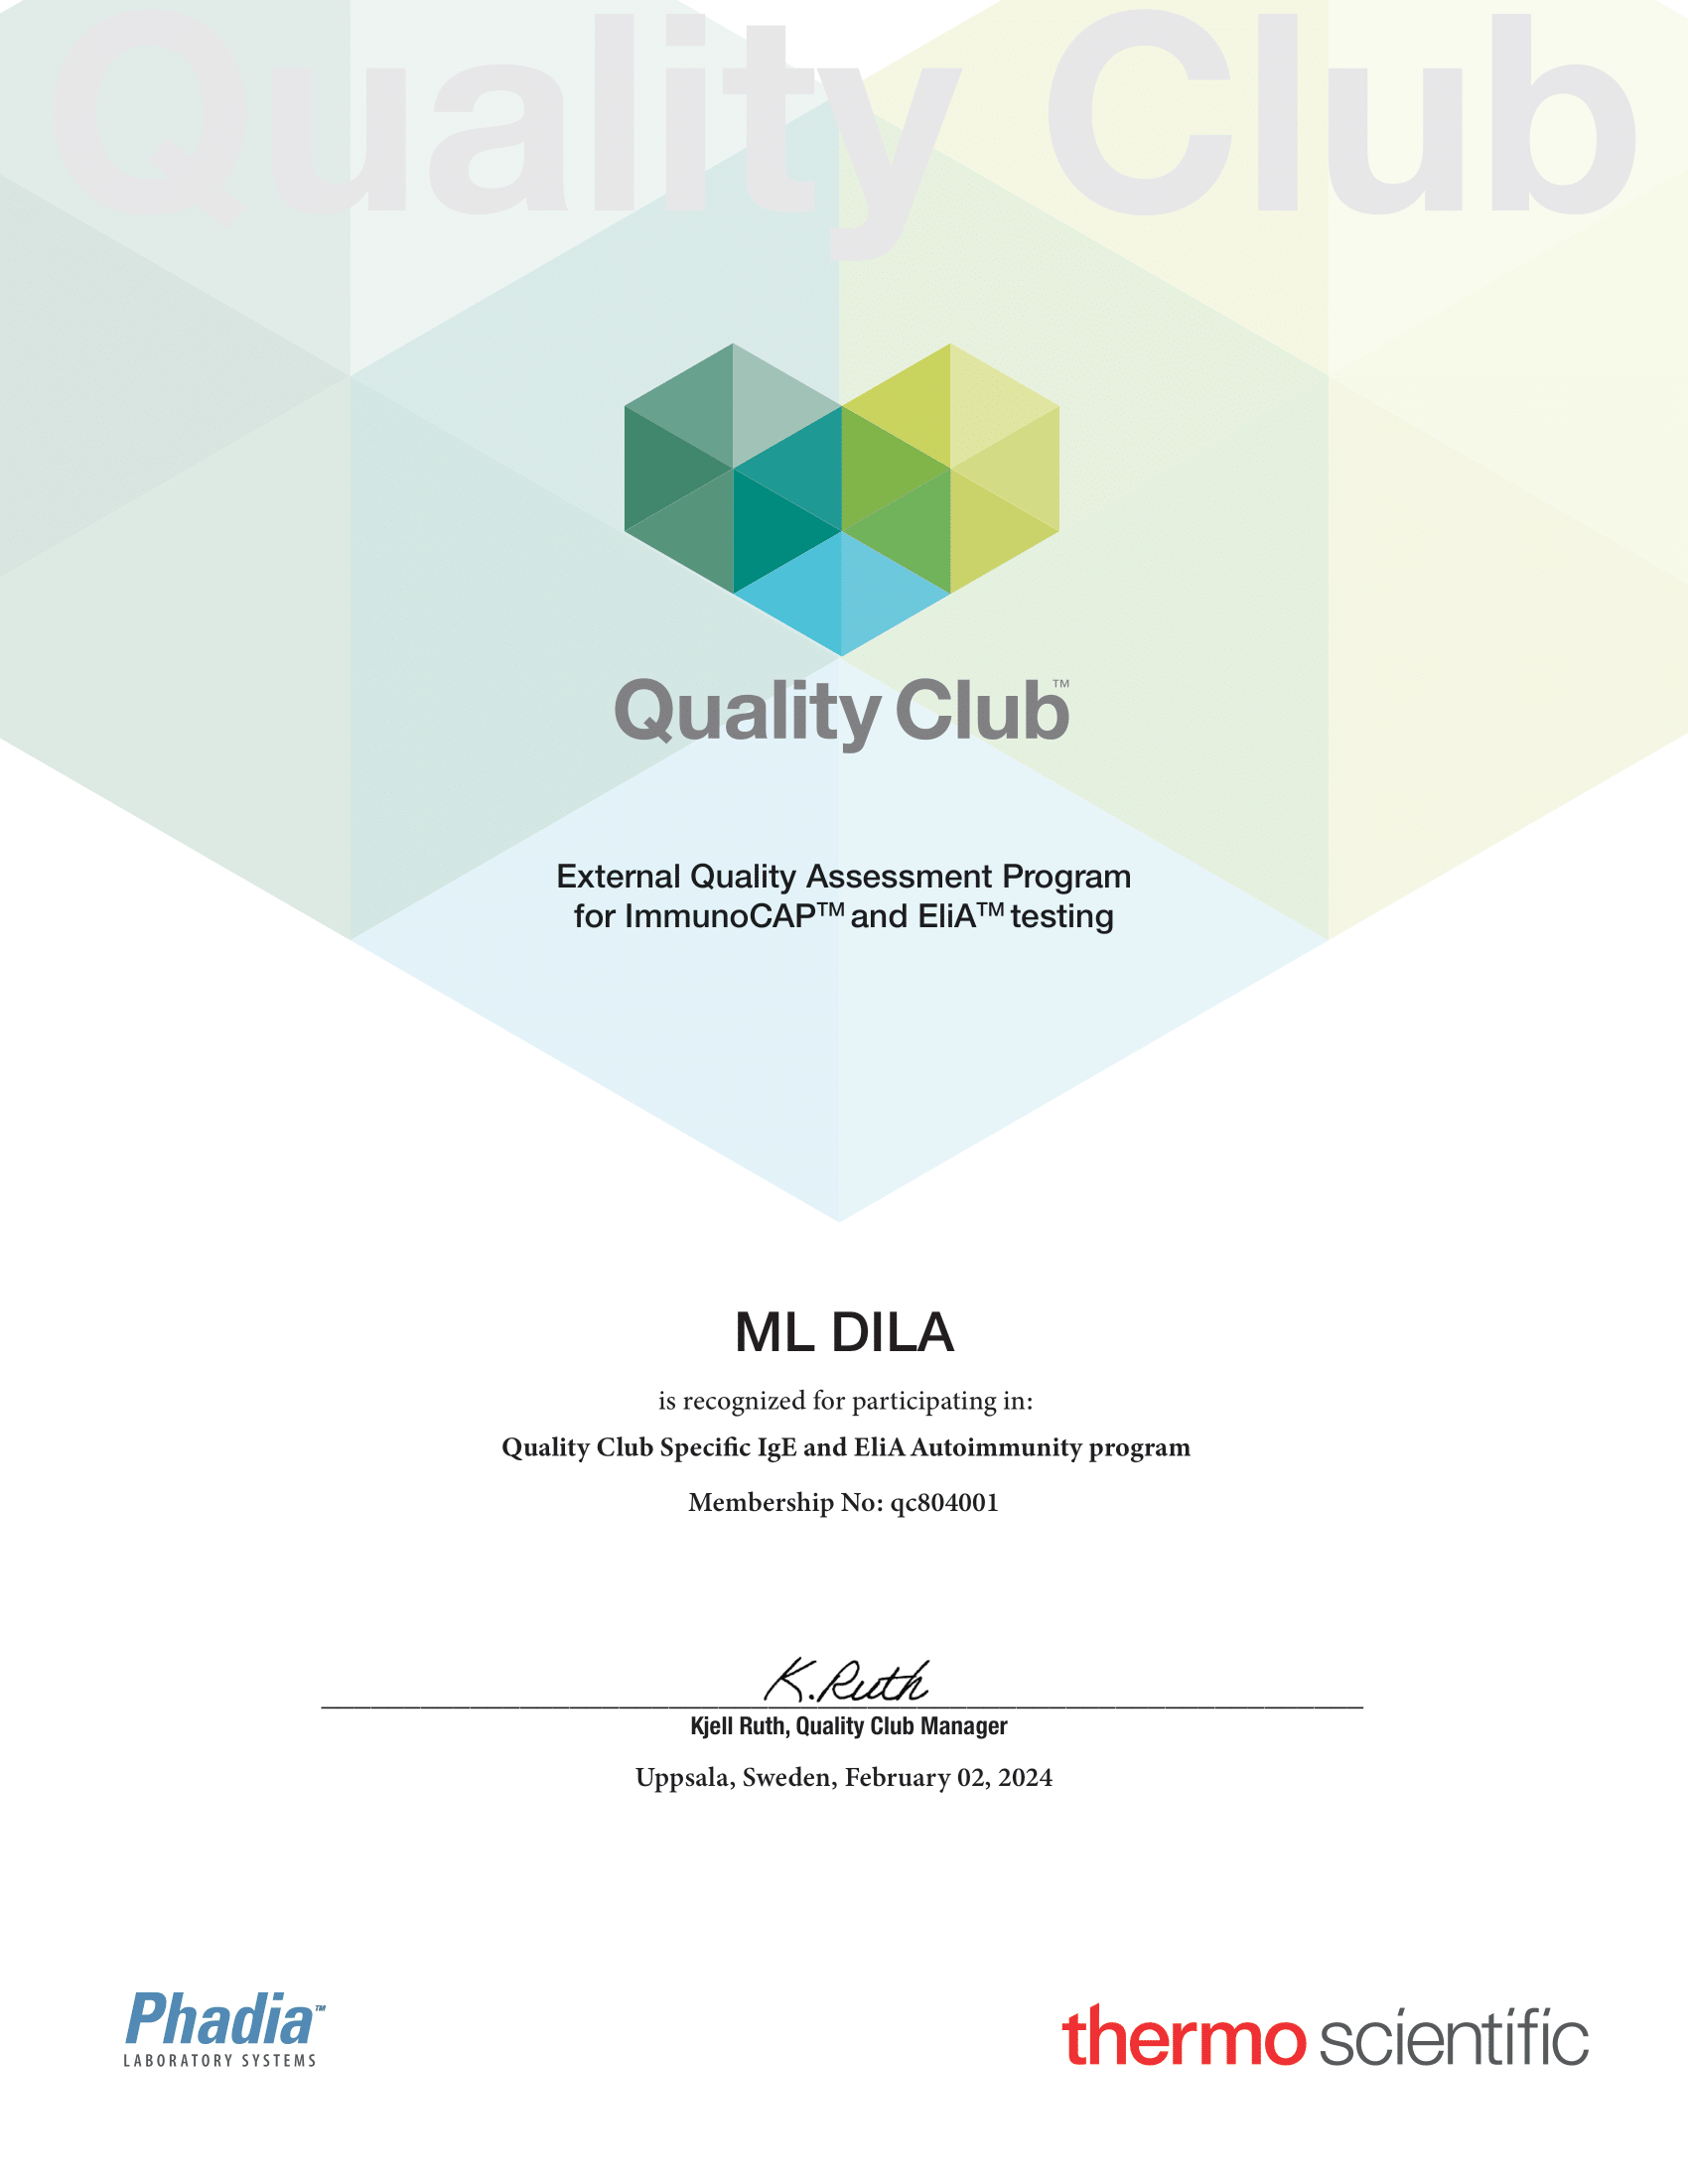 Фото - Сертификат участия в программе внешней оценки качества QC Phadia (ImmunoCAP IgE, ELIA) 2023